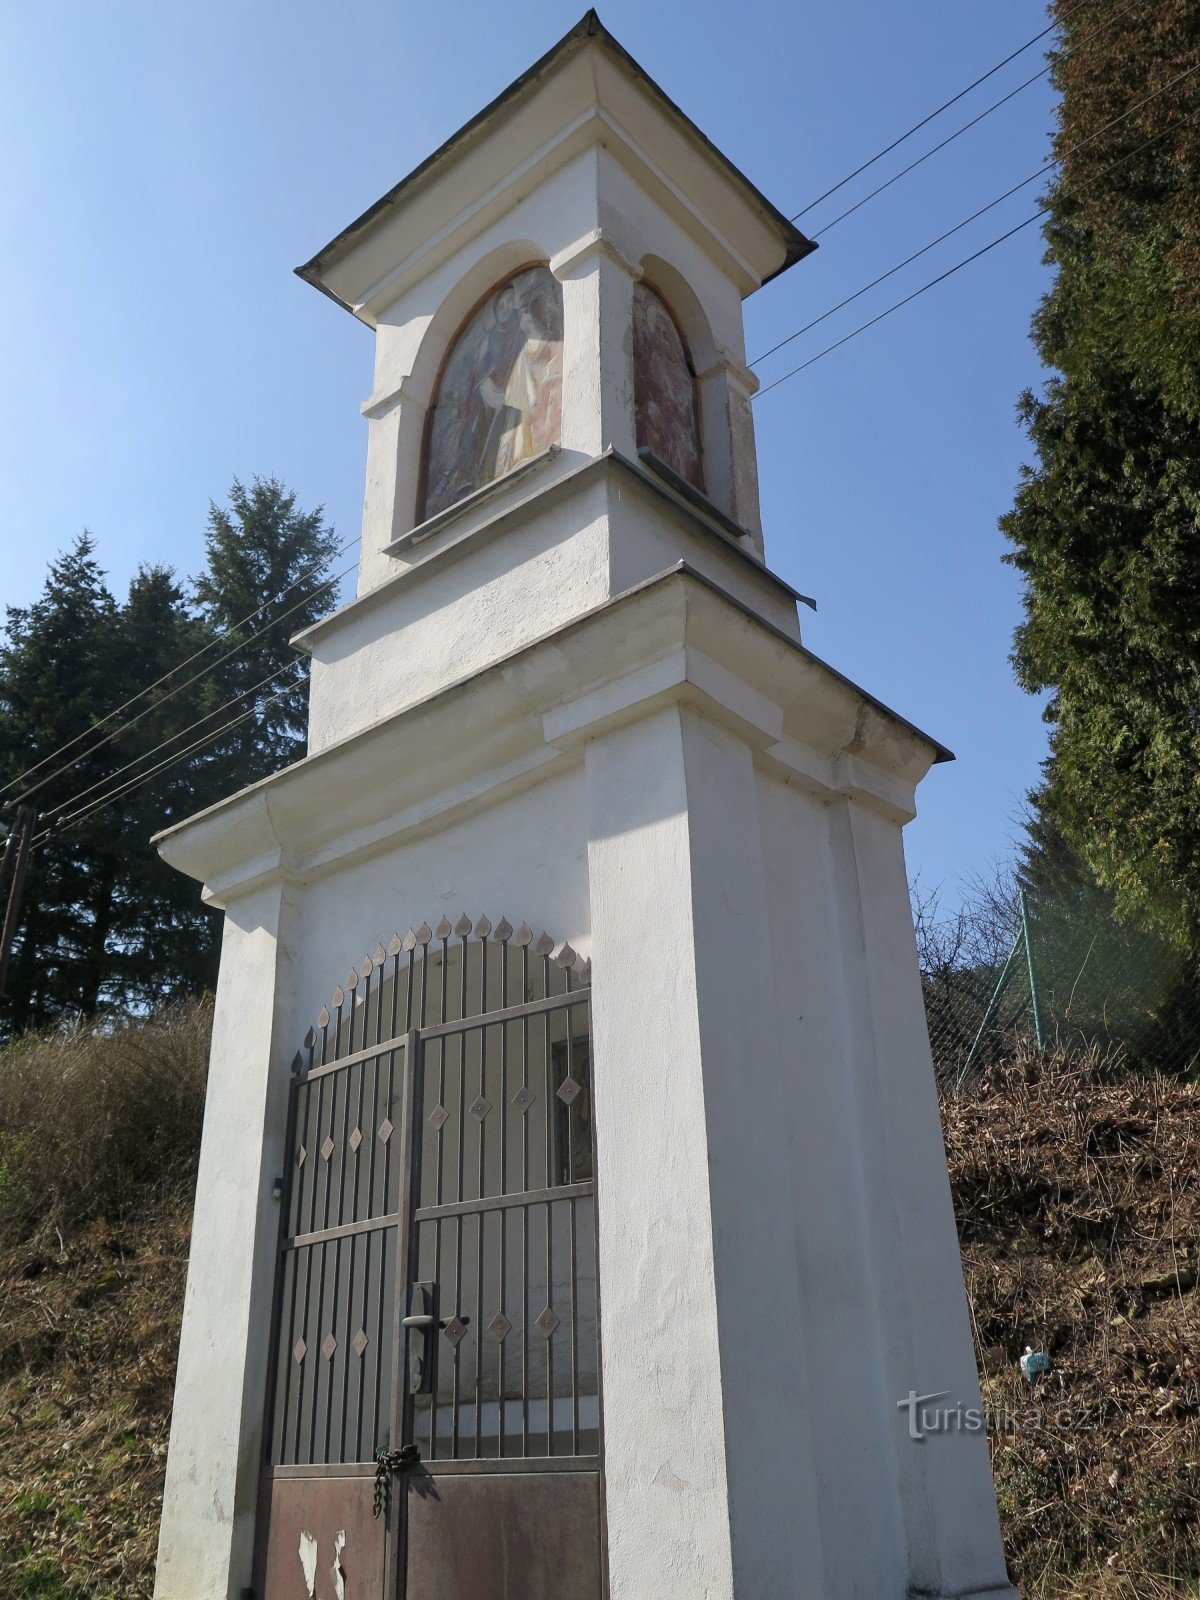 Velké Opatovice – chapel of St. Rosalie